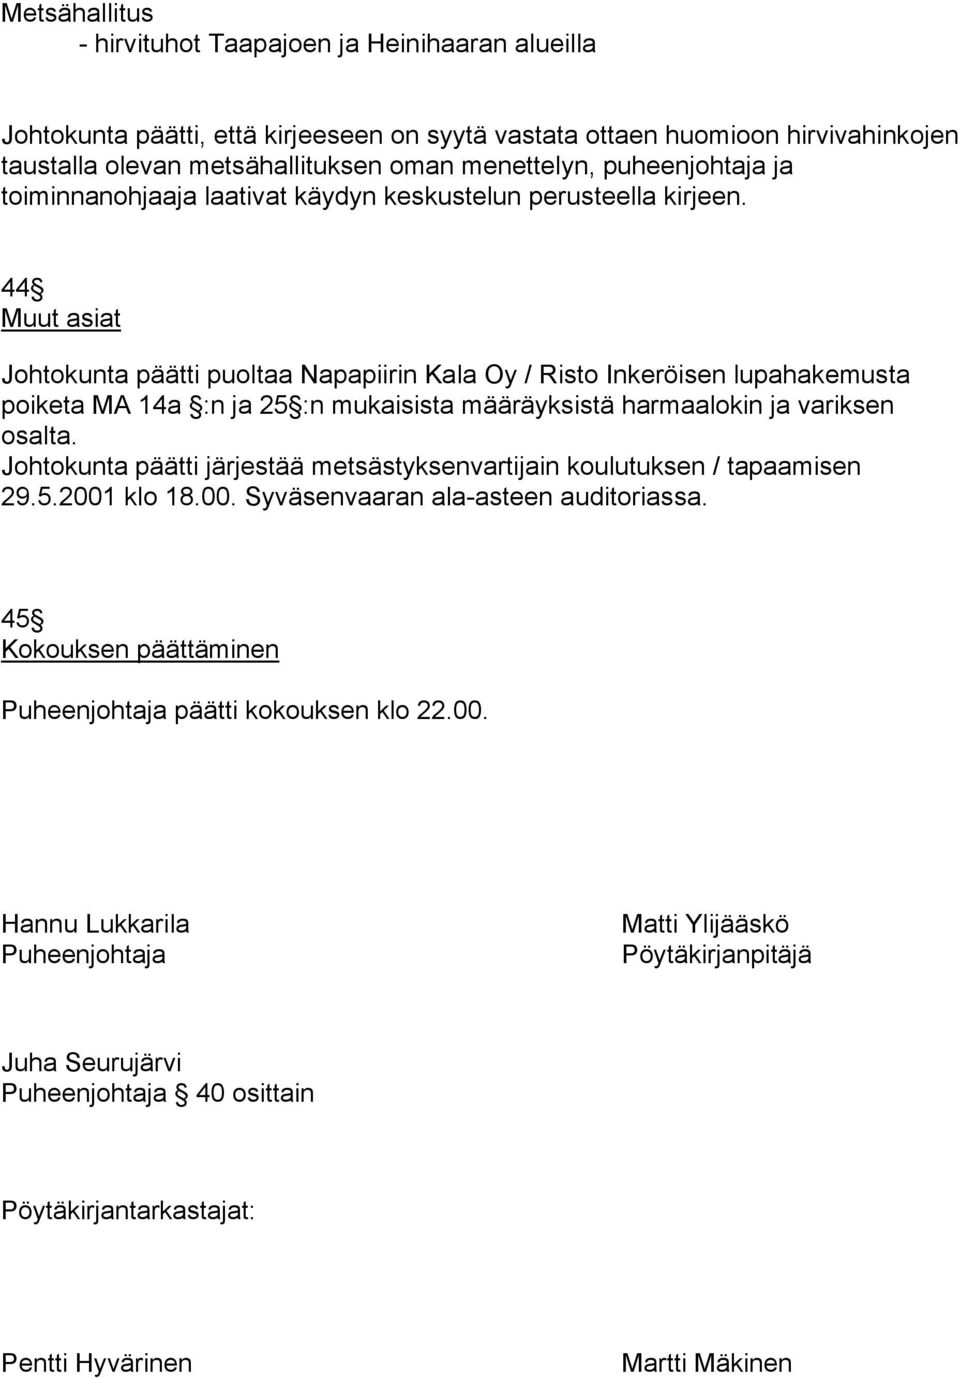 44 Muut asiat Johtokunta päätti puoltaa Napapiirin Kala Oy / Risto Inkeröisen lupahakemusta poiketa MA 14a :n ja 25 :n mukaisista määräyksistä harmaalokin ja variksen osalta.